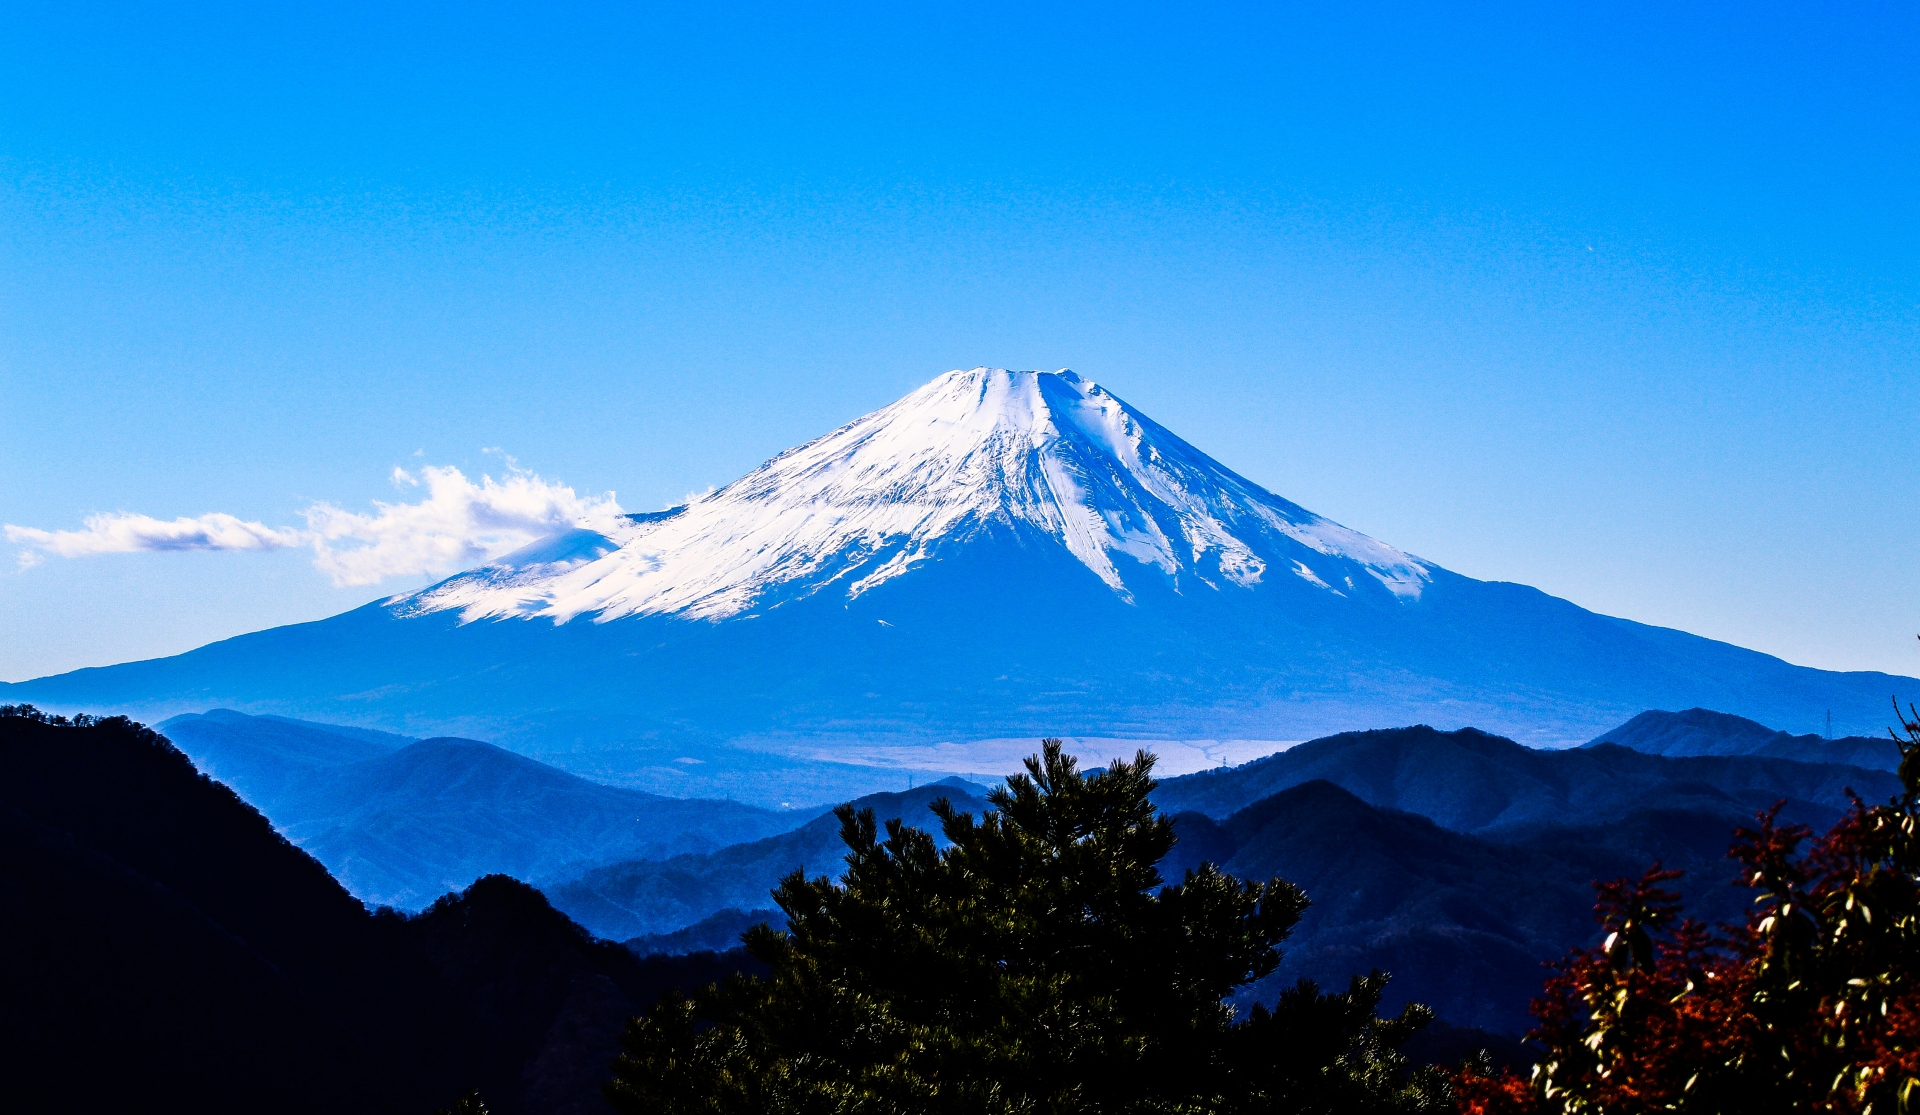 Jepang memiliki gunung tertinggi yaitu